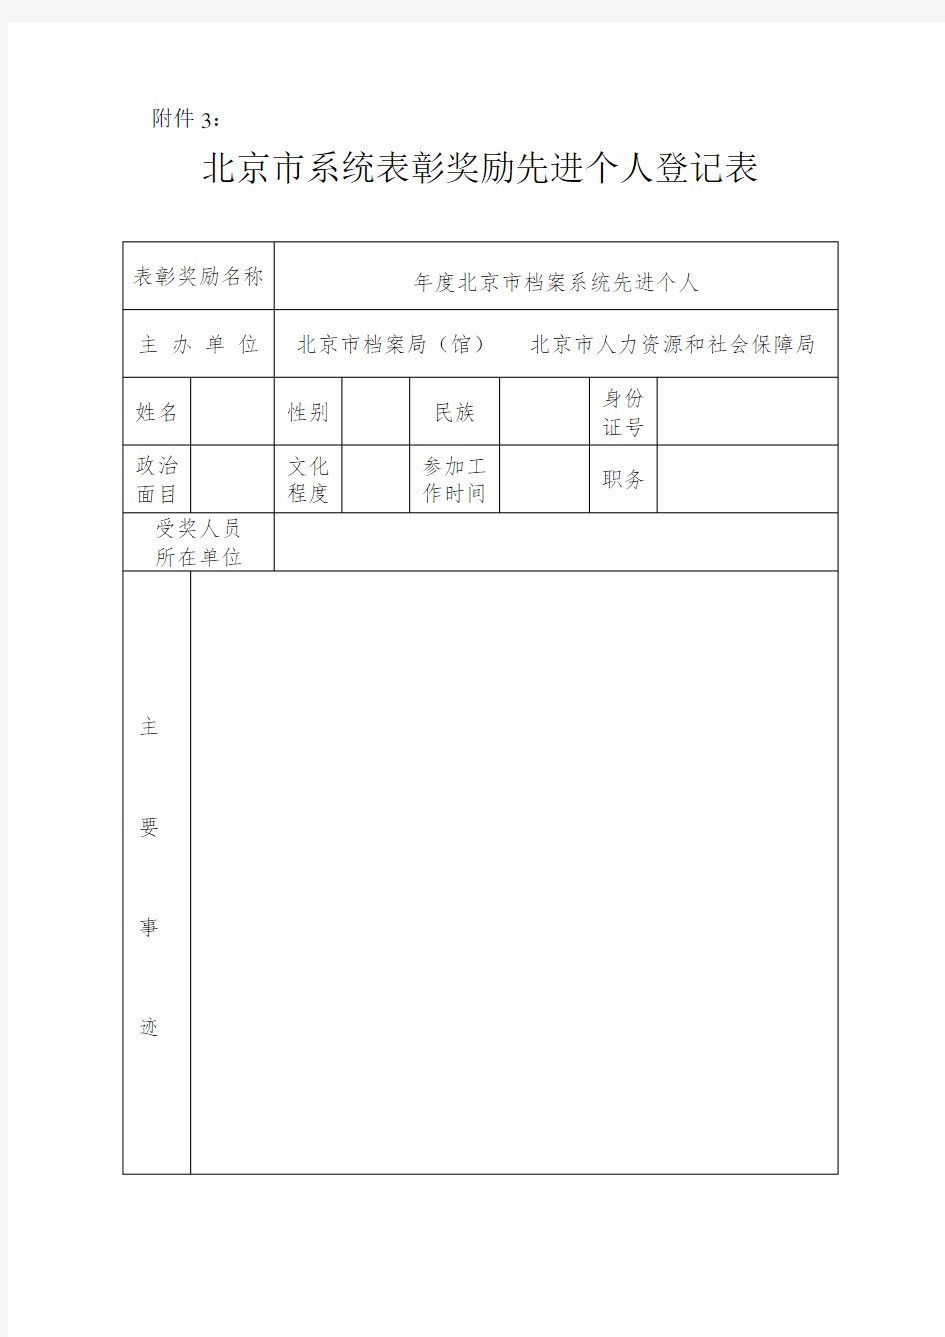 北京市系统表彰奖励先进个人登记表 (3)